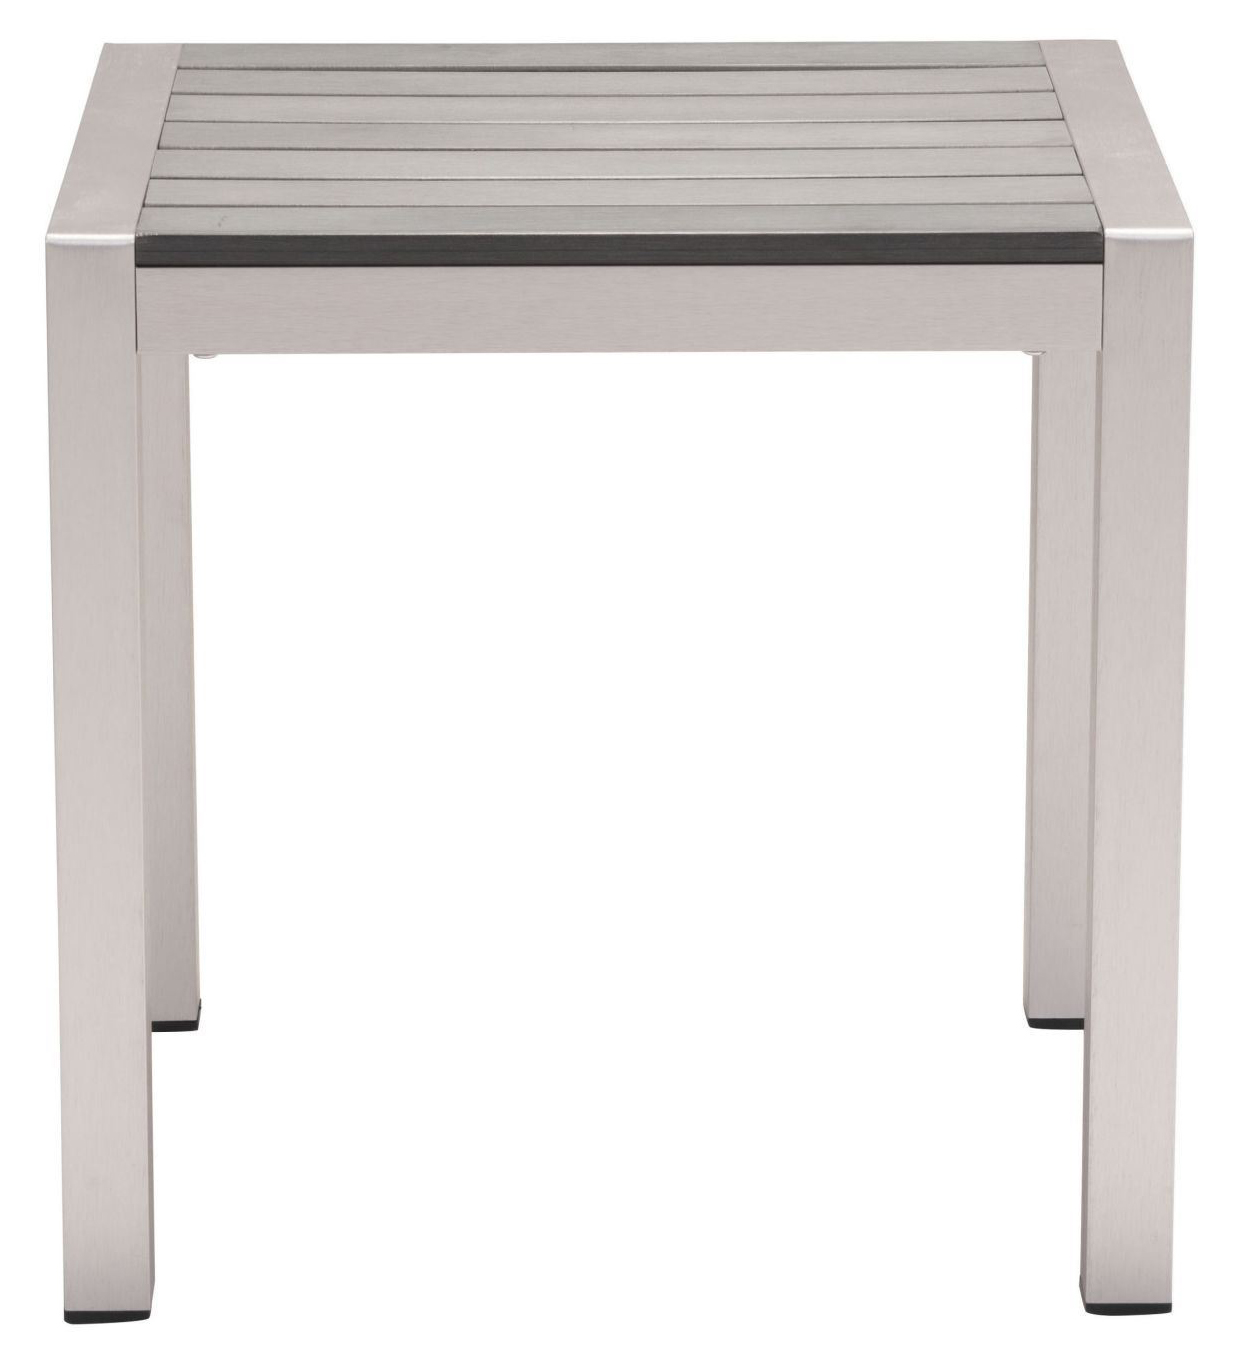 cosmopolitan side table b aluminum